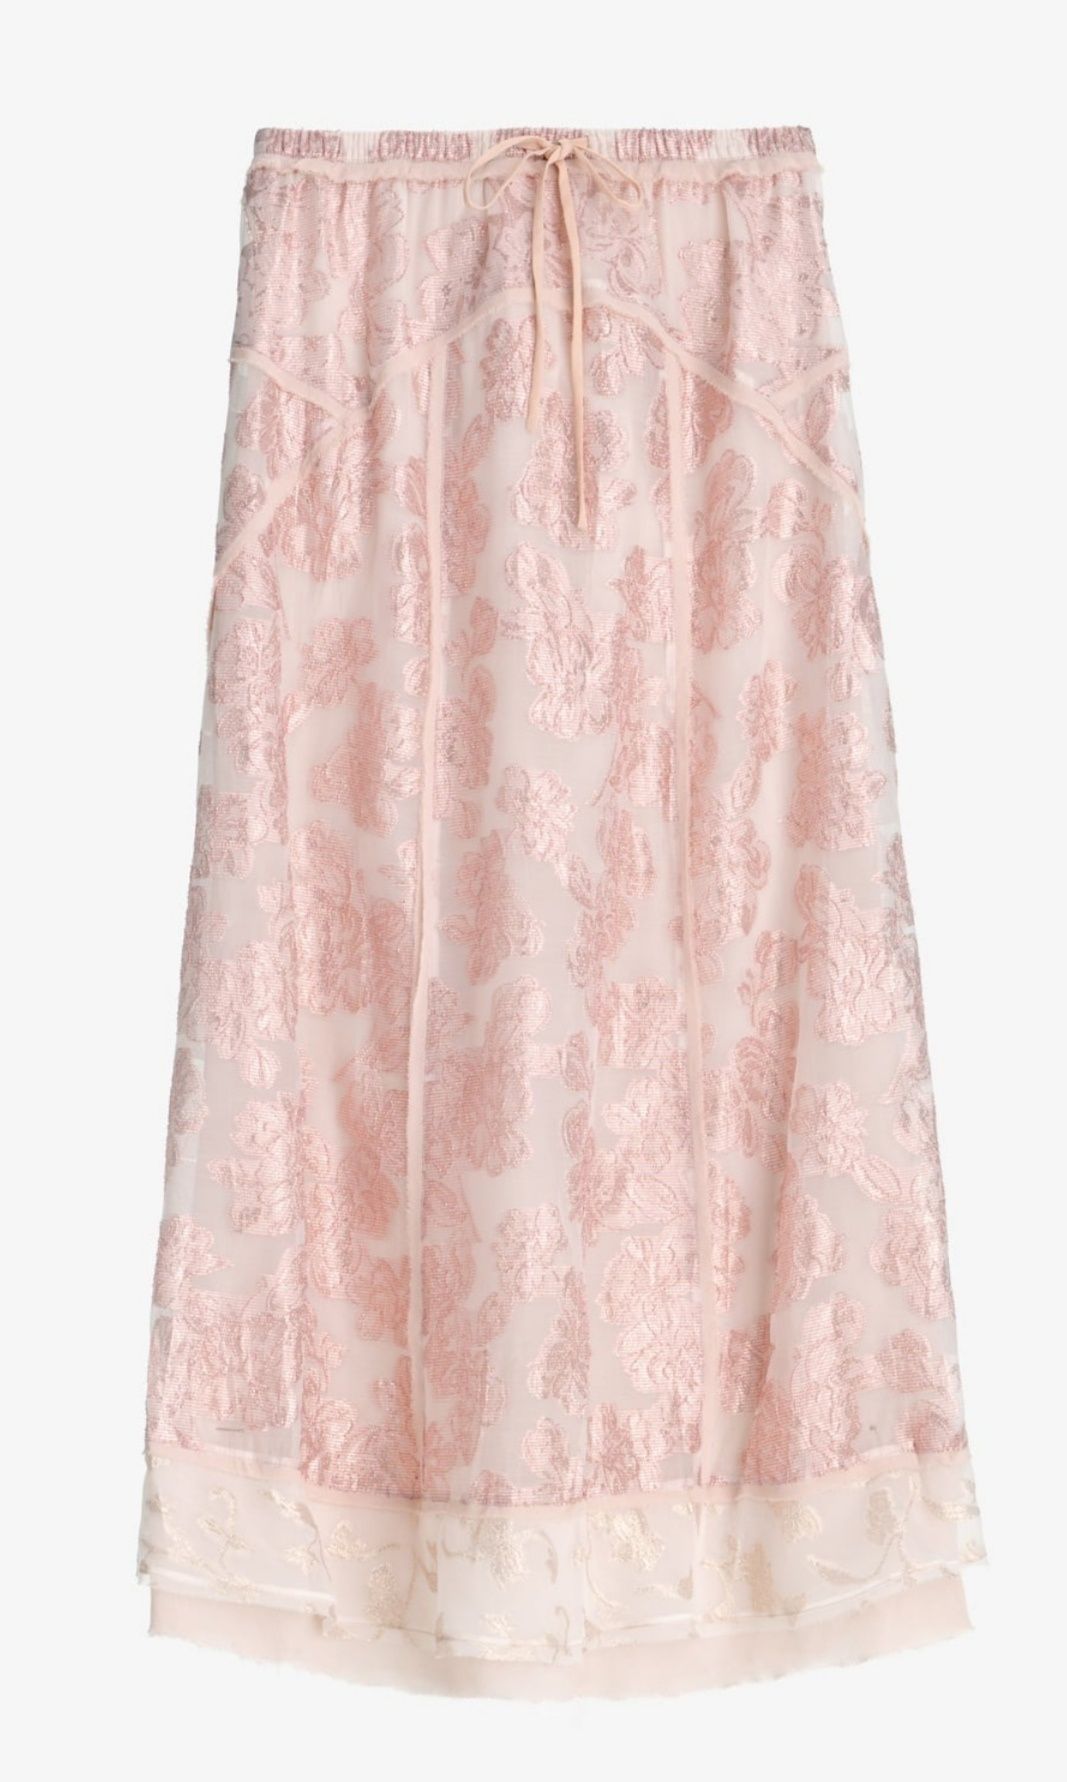 Długa spódnica z metalizowaną różową nicią, roz. XS, nowa, zara